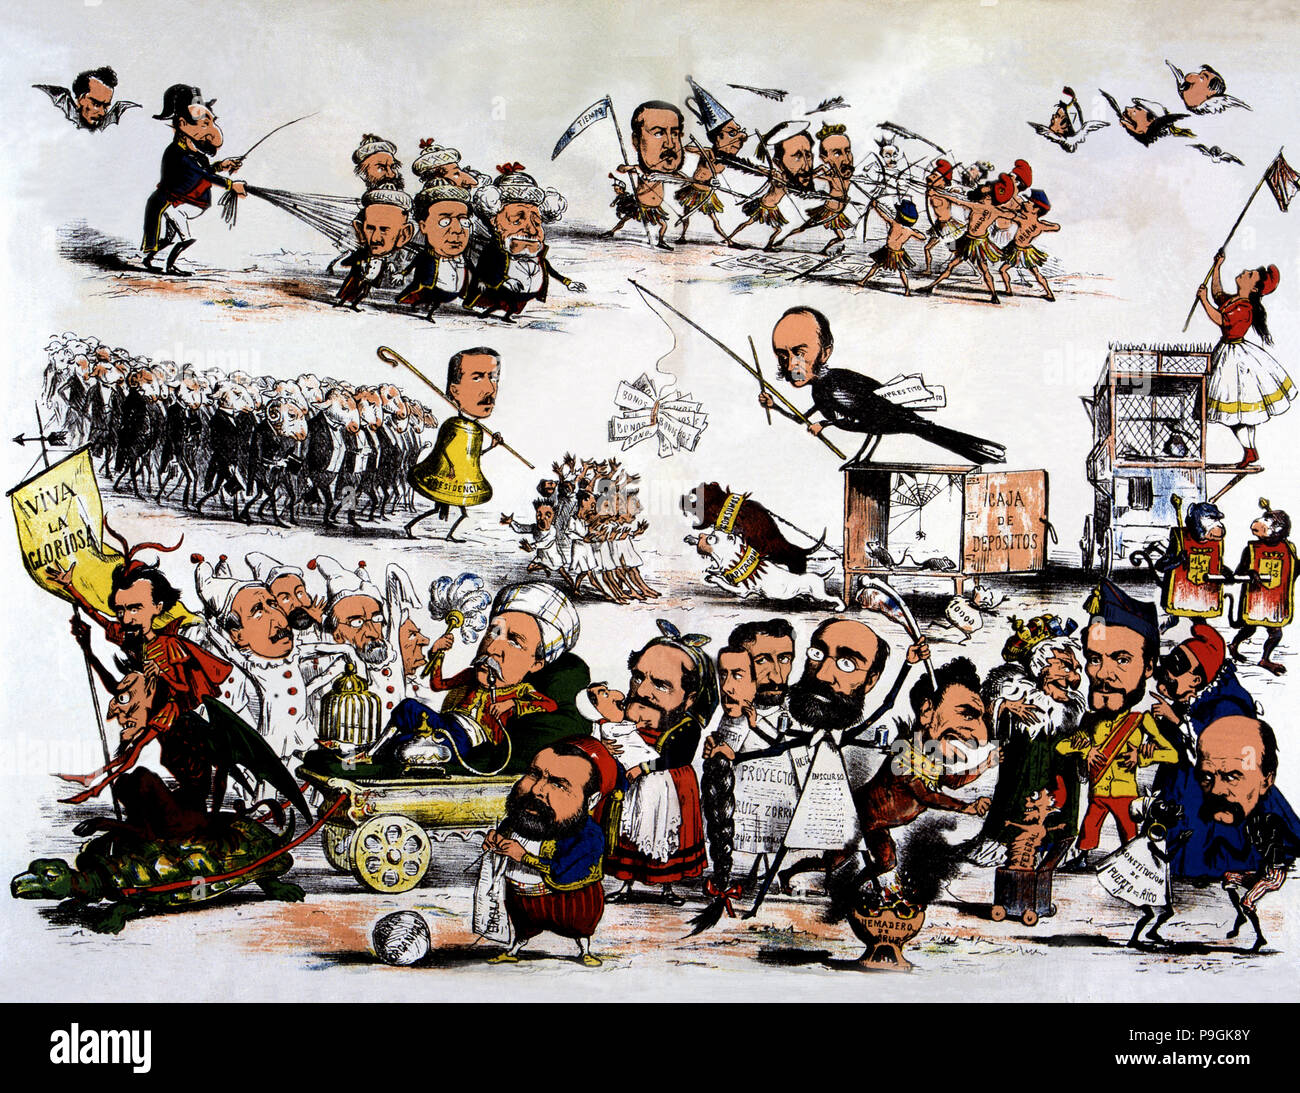 La rivoluzione del 1868, cartoon politico della rivoluzione che rovesciò Isabel II denominata "Glor… Foto Stock